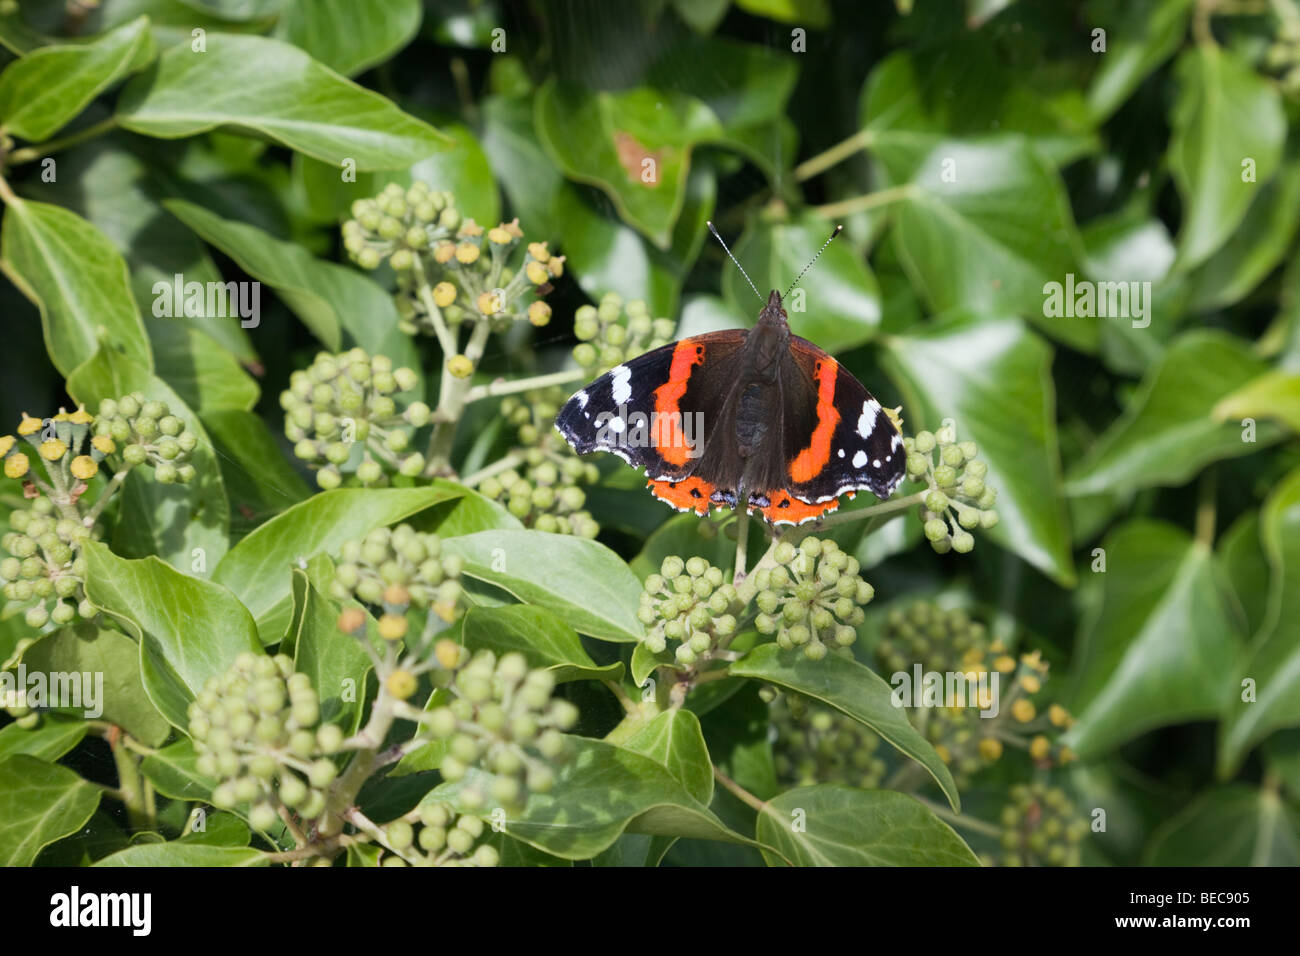 La nature un papillon Vulcain (Vanessa atalanta) sur les fleurs de lierre (Hedera helix) au début de l'automne. Pays de Galles, Royaume-Uni, Angleterre Banque D'Images